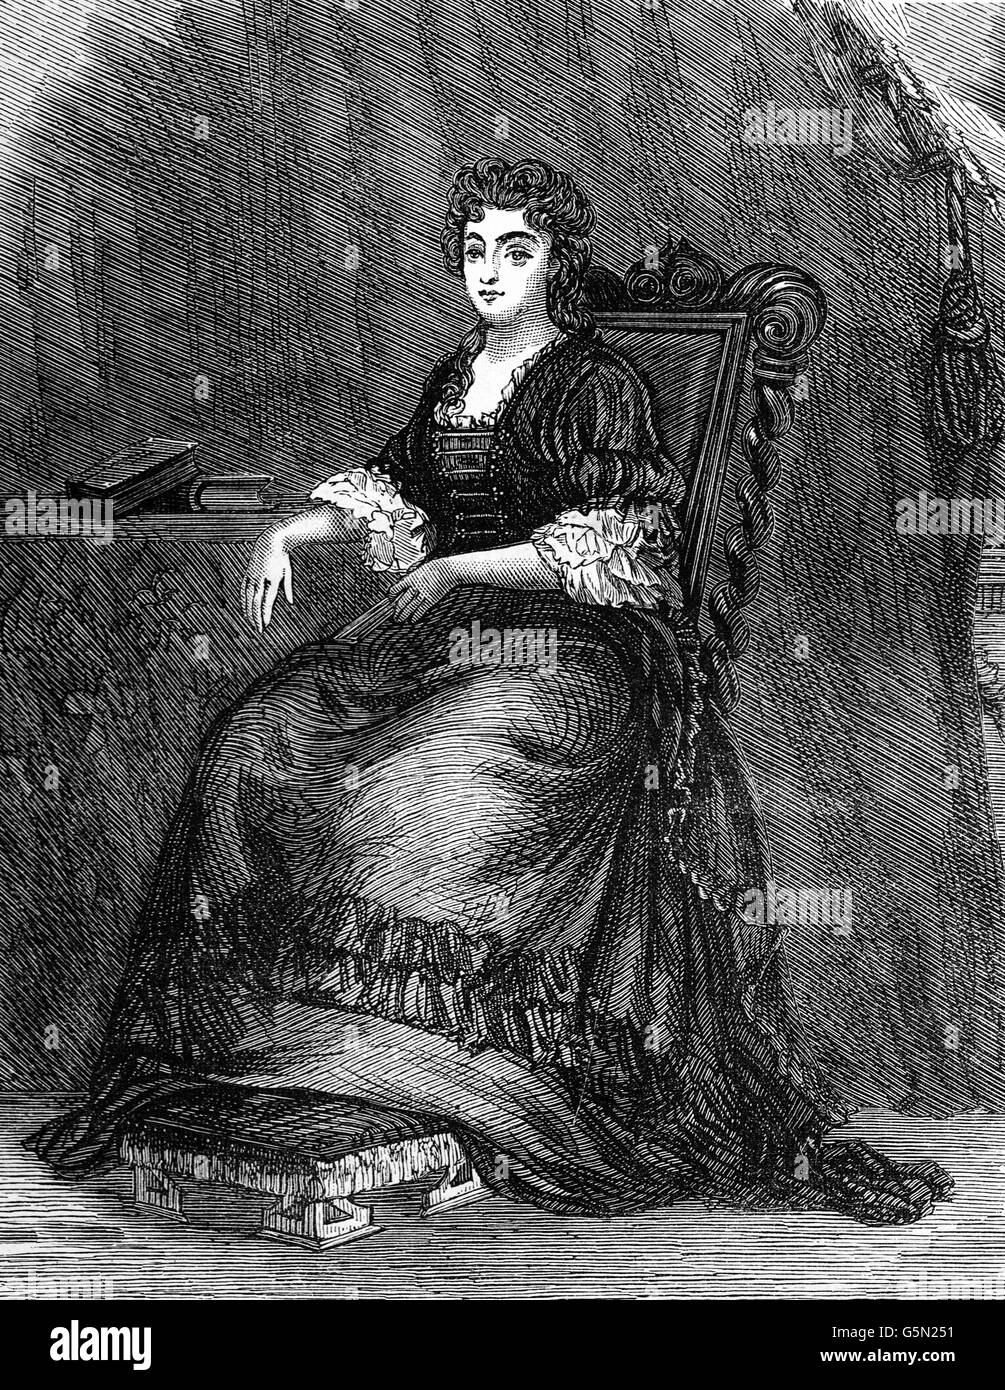 La princesse Anne - Marie Anne de Bourbon (1689 - 1720) était une princesse du sang à la cour de Versailles. Elle a été la première épouse de Louis Henri de Bourbon et en tant que telle était la Duchesse de Bourbon et de la princesse de Condé par mariage. Banque D'Images